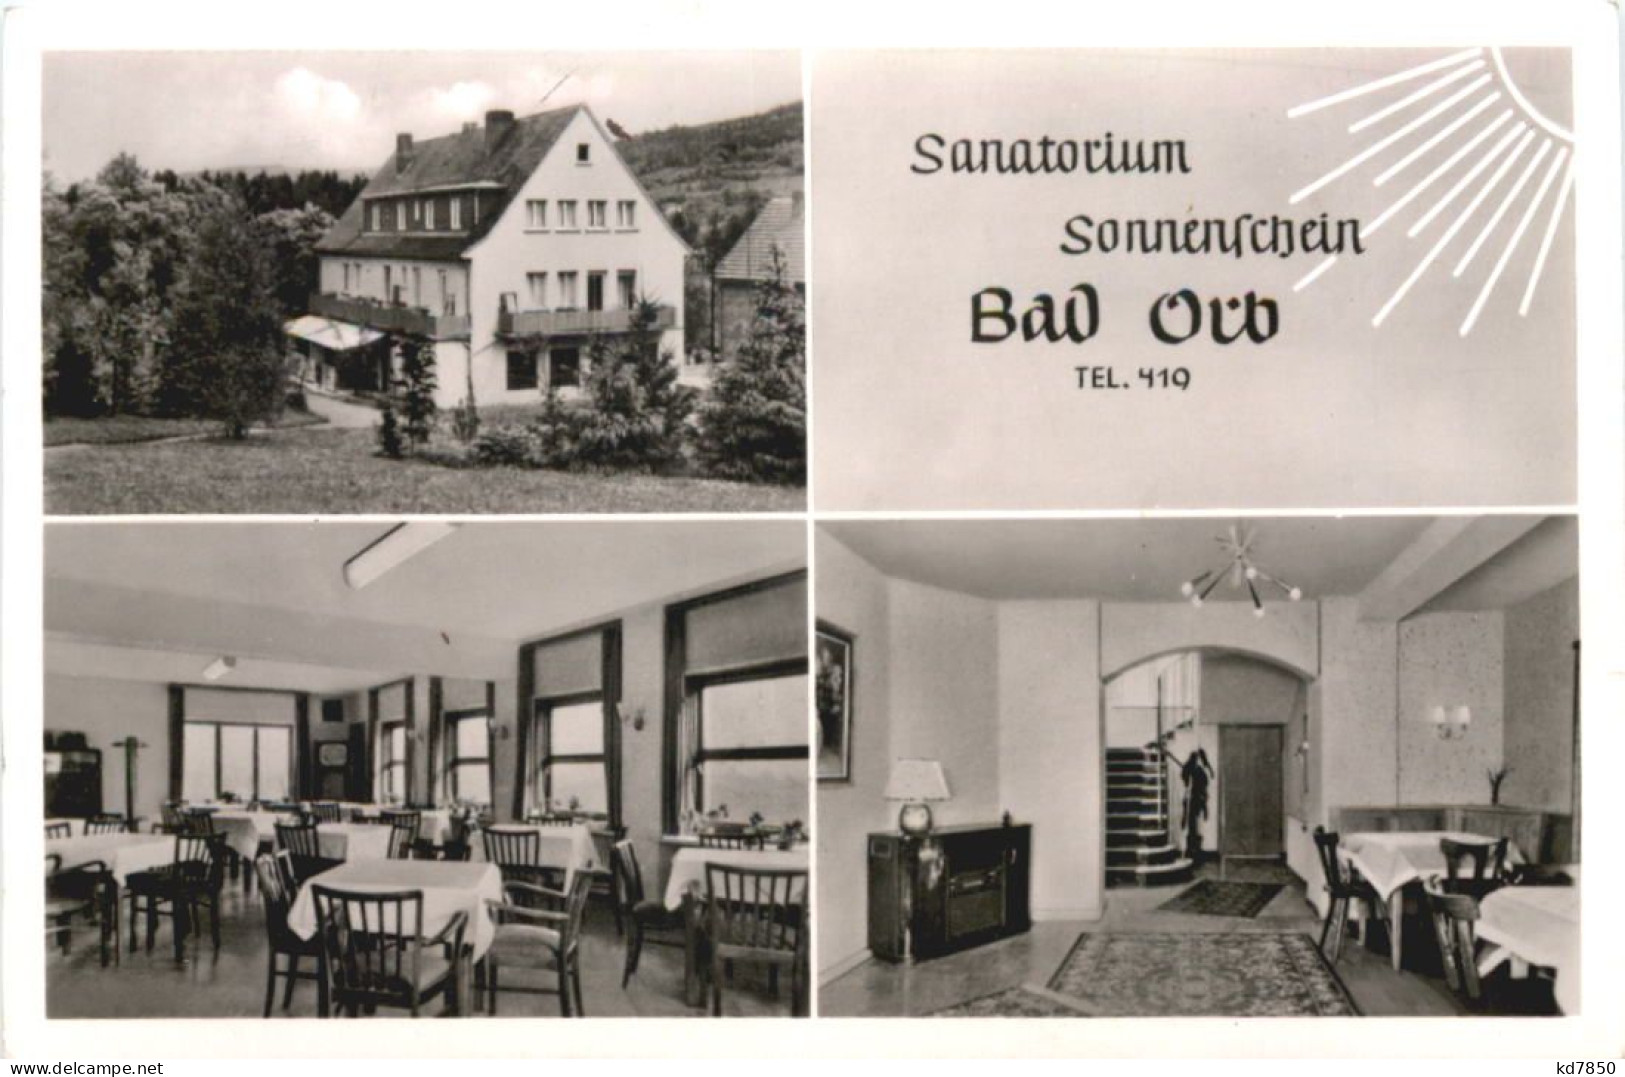 Bad Orb Im Spessart - Sanatorium Sonnenschein - Bad Orb